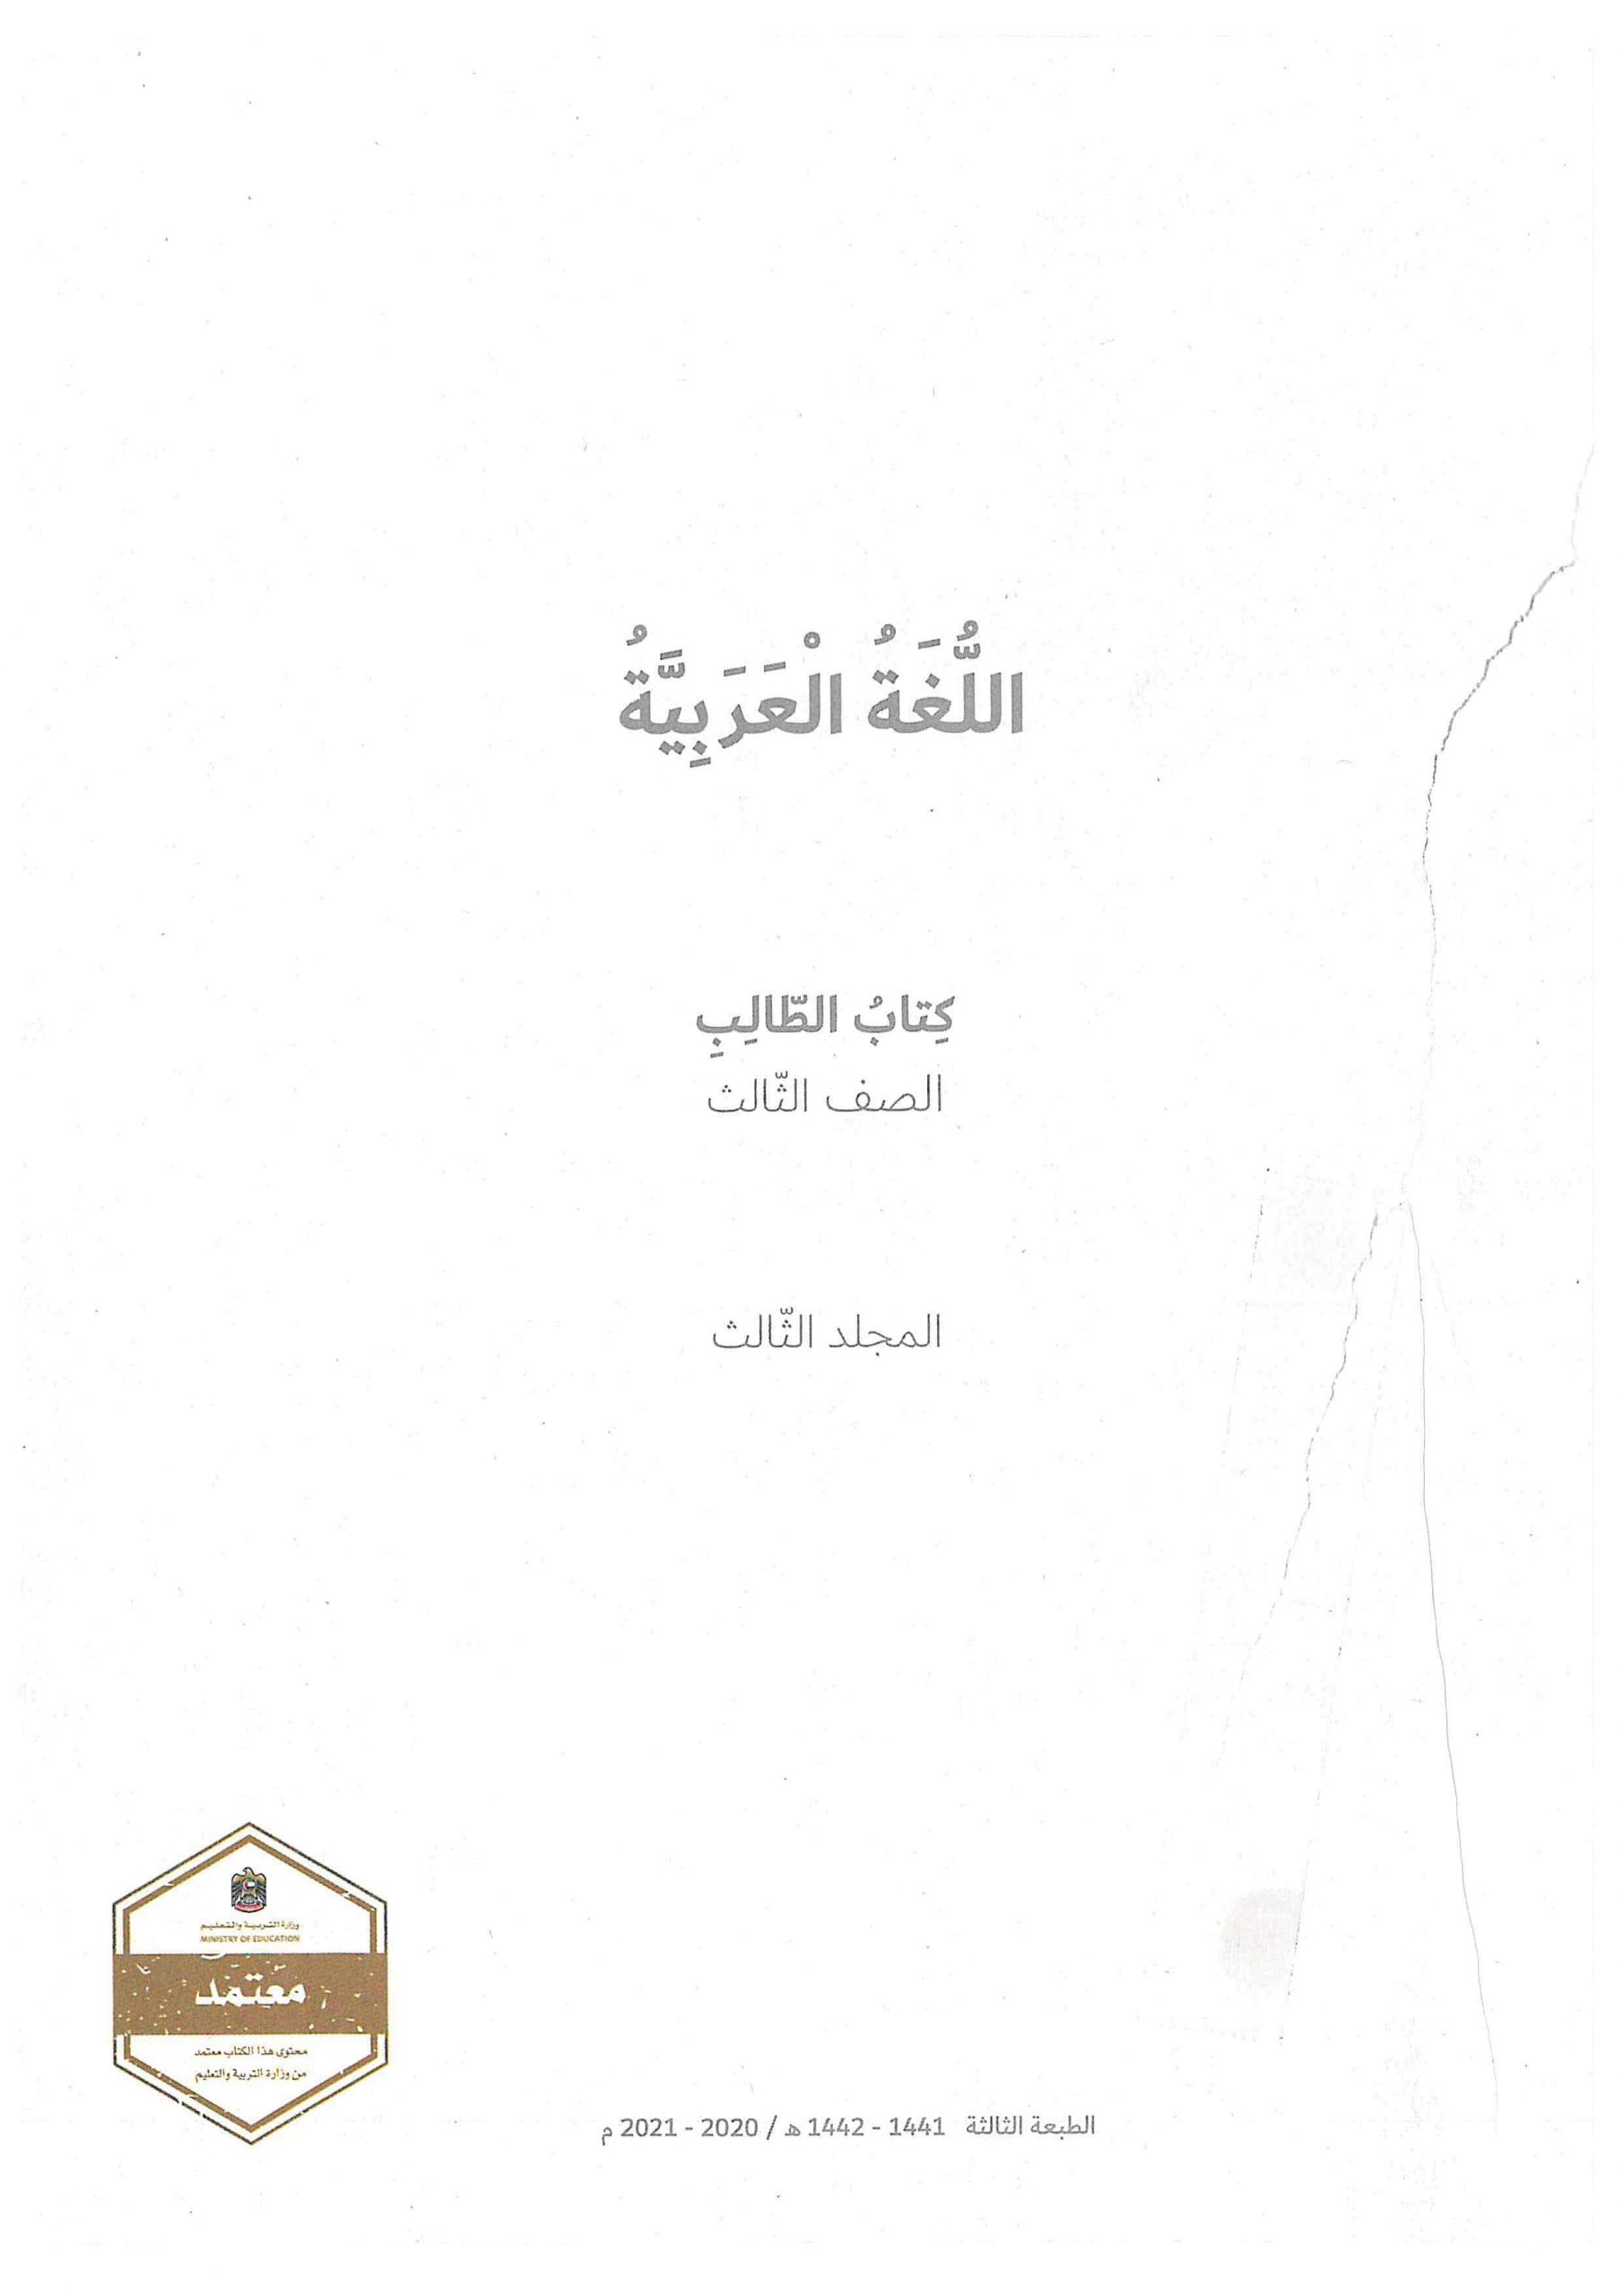 كتاب الطالب الفصل الدراسي الثاني 2020-2021 الصف الثالث مادة اللغة العربية 